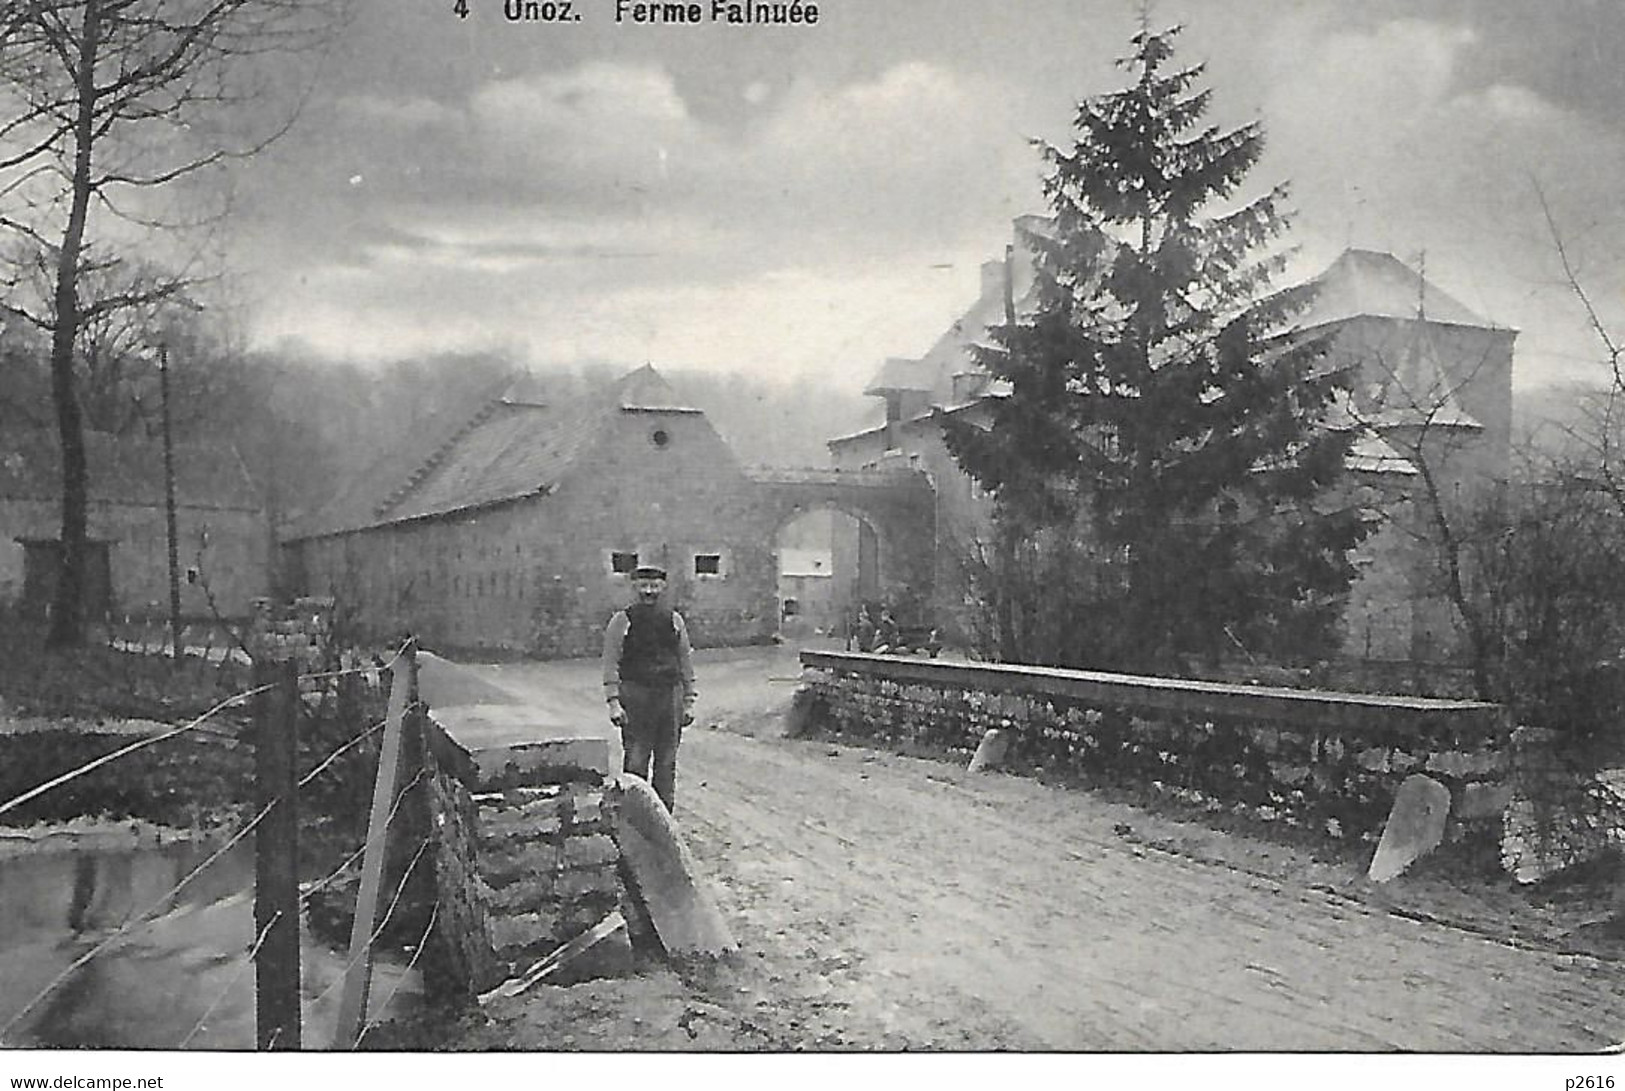 BELGIQUE- ONOZ - 1911 - FERME FALNUEE - Jemeppe-sur-Sambre